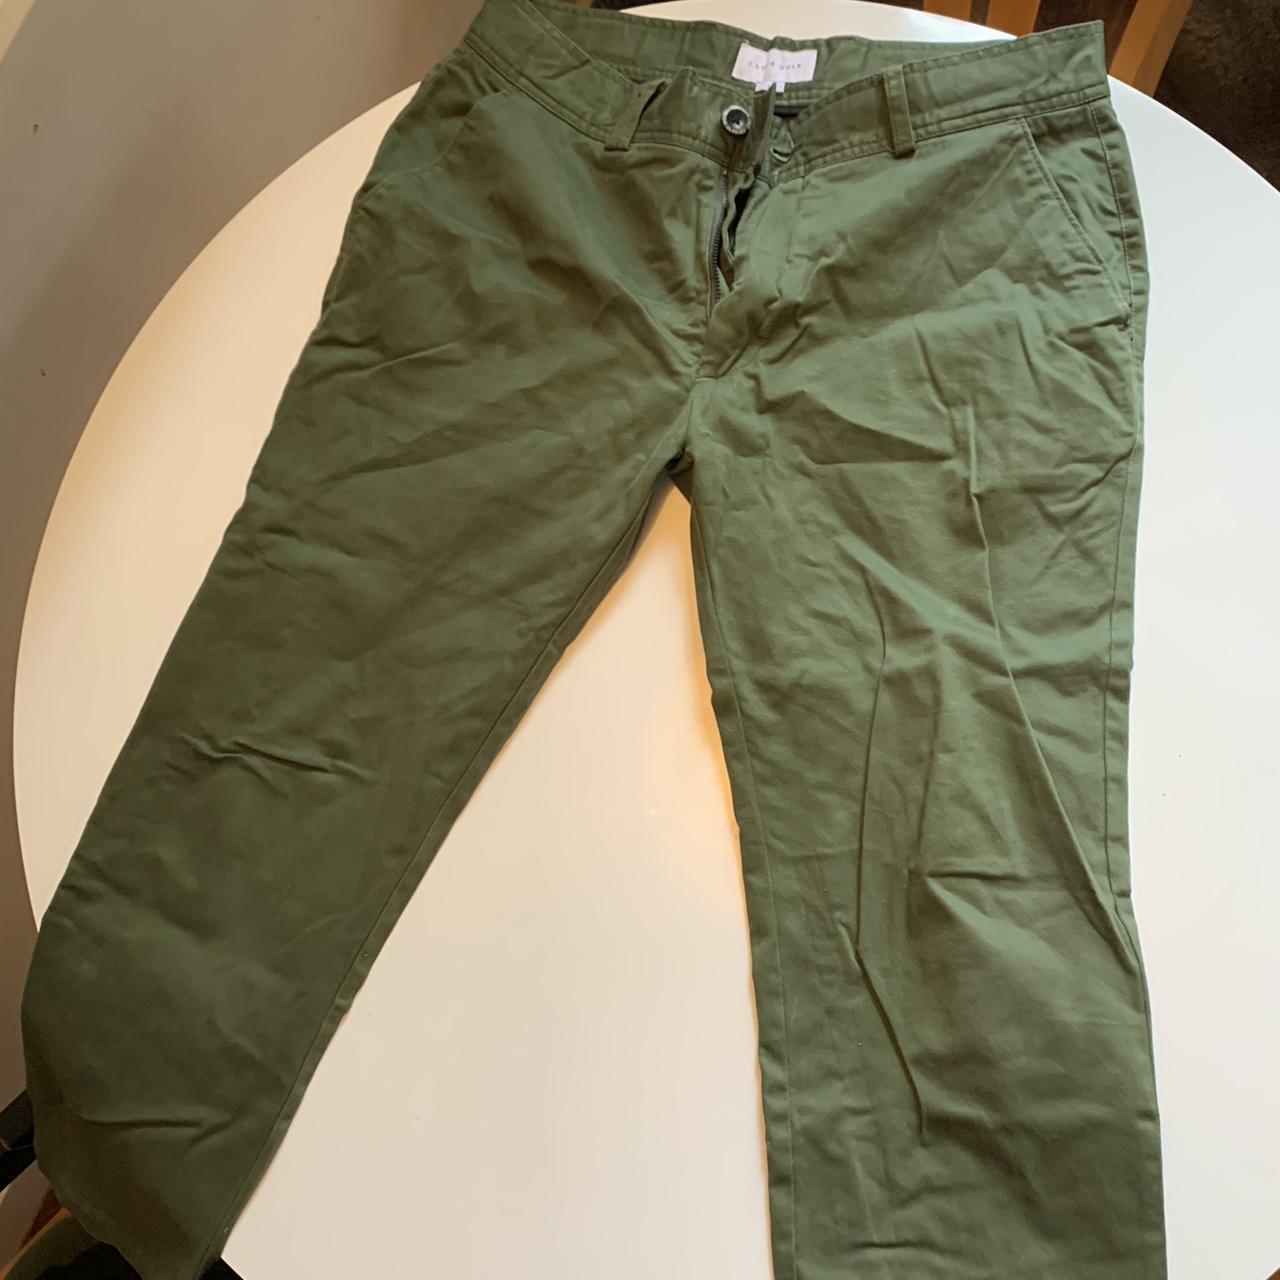 Green I Love Ugly pants. Size L (fits like a US... - Depop